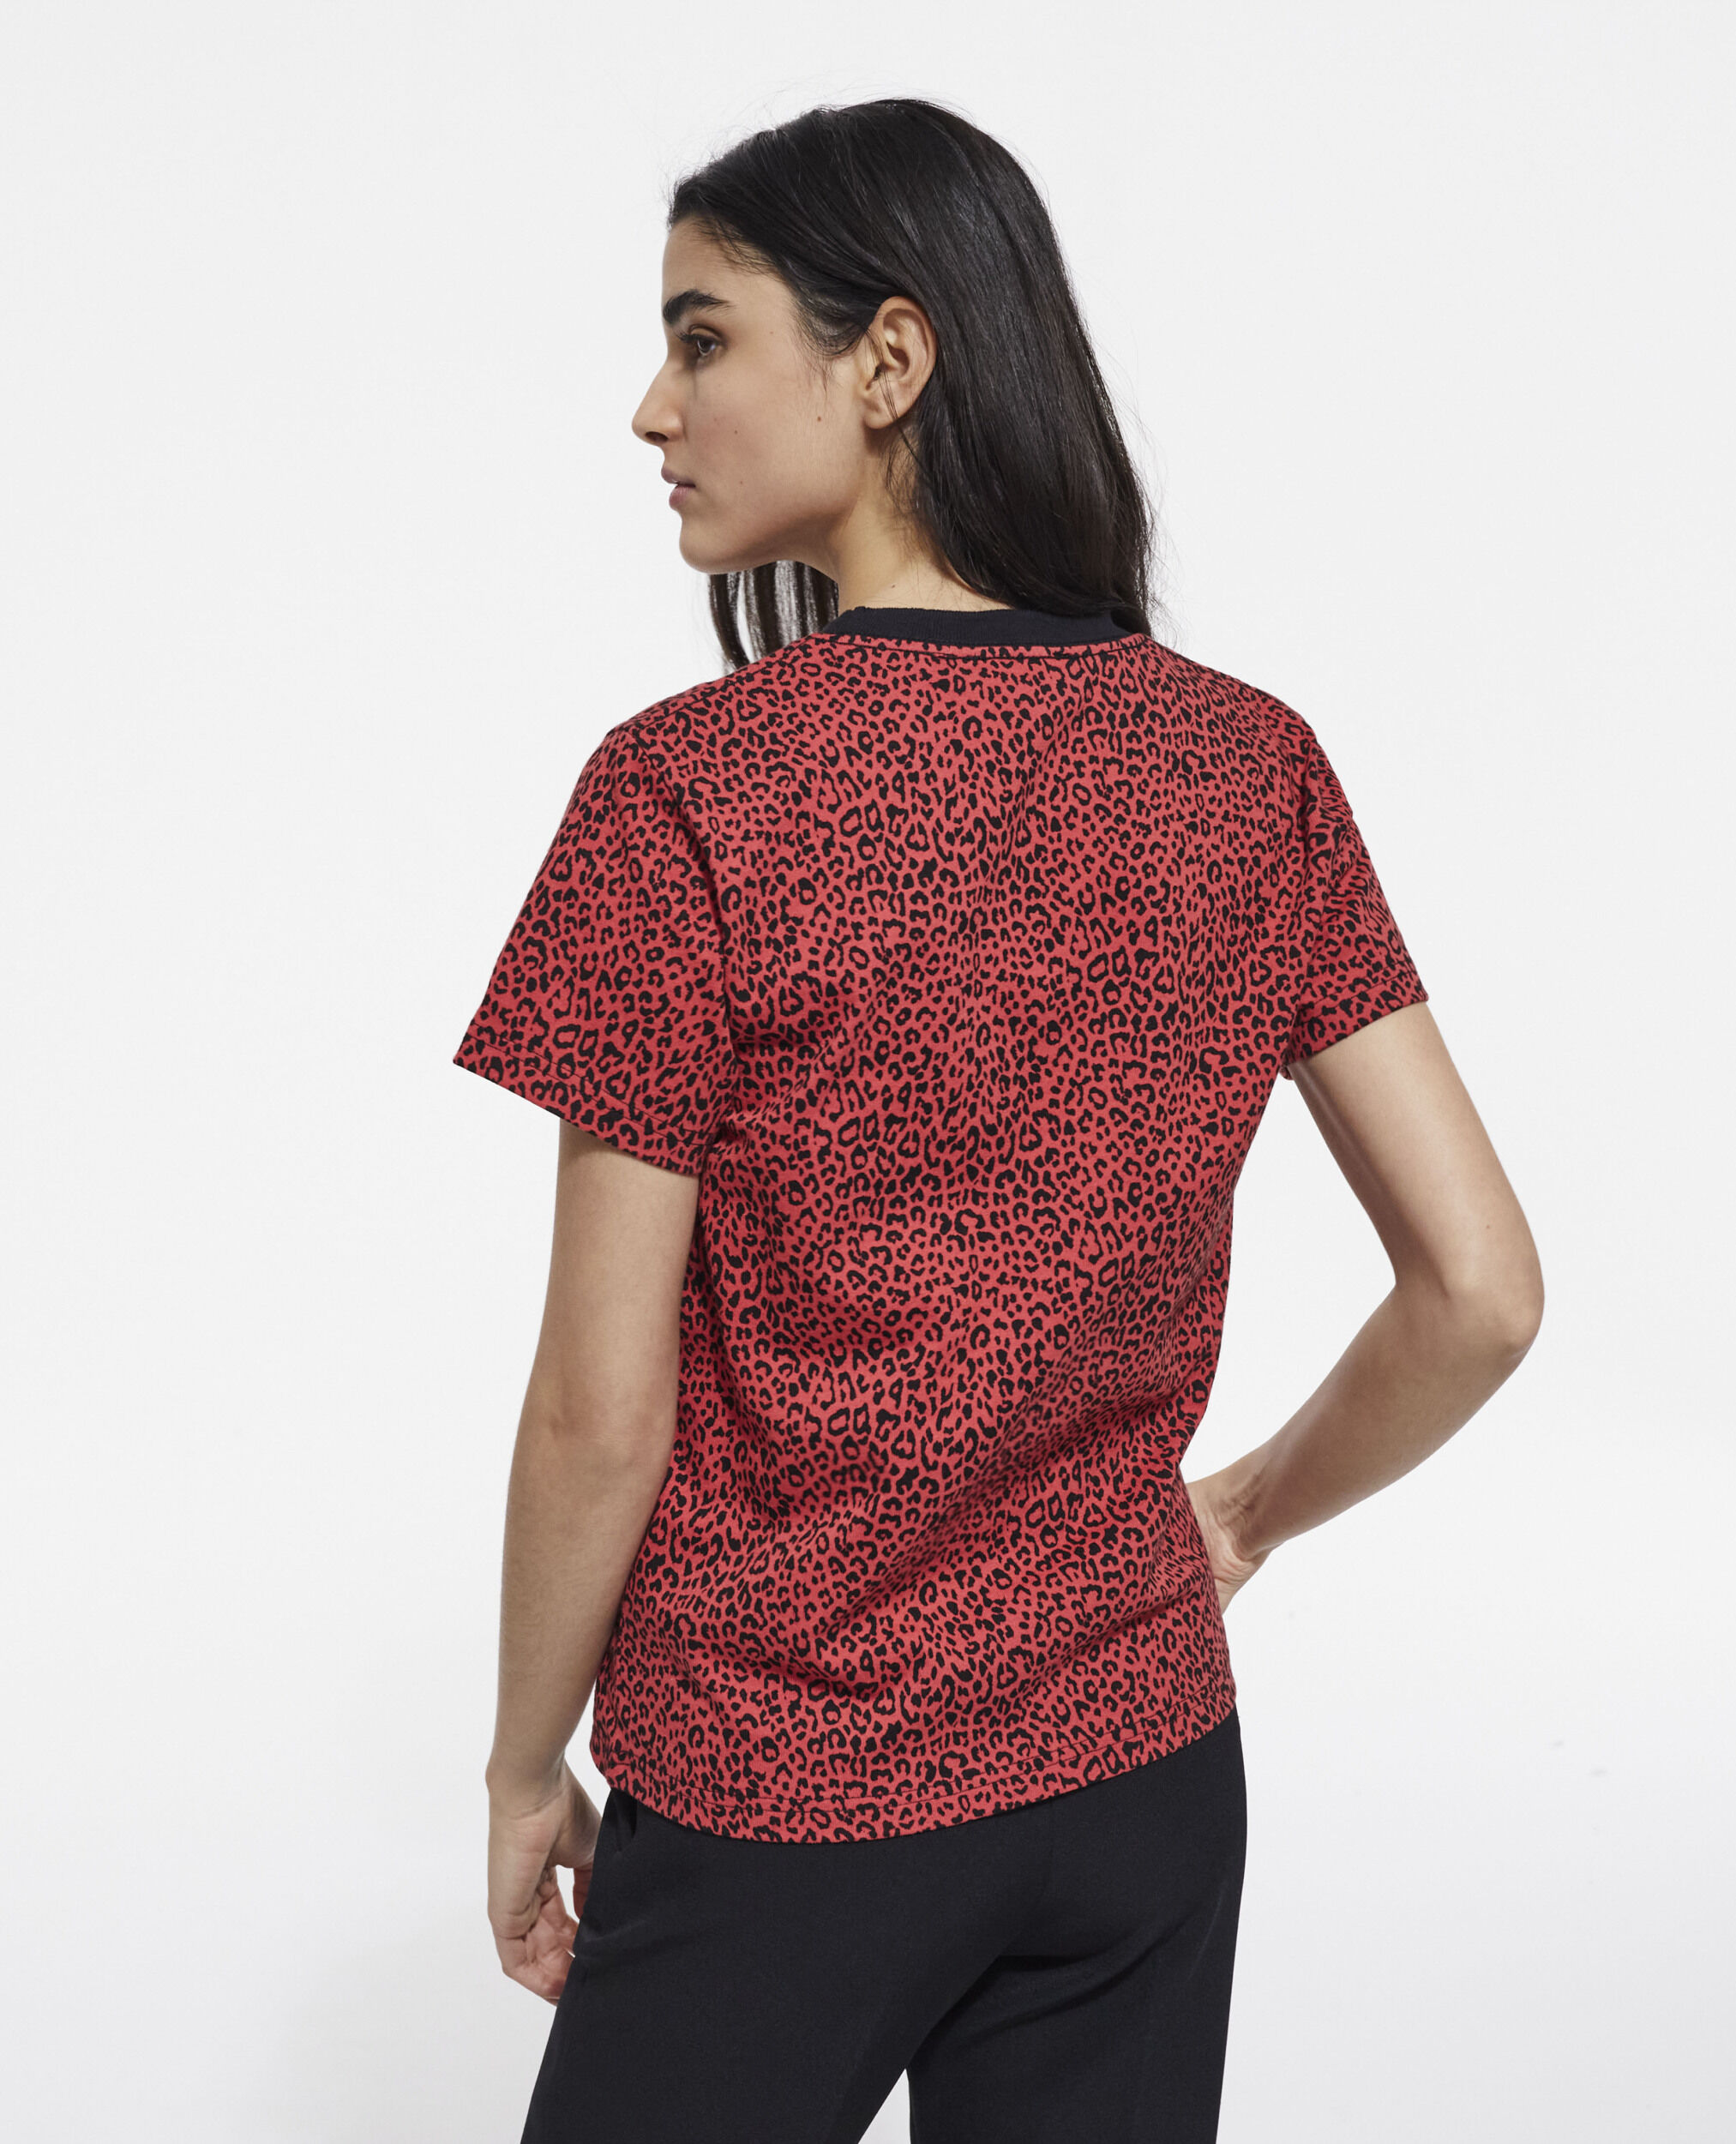 Camiseta leopardo roja, DARK RED, hi-res image number null